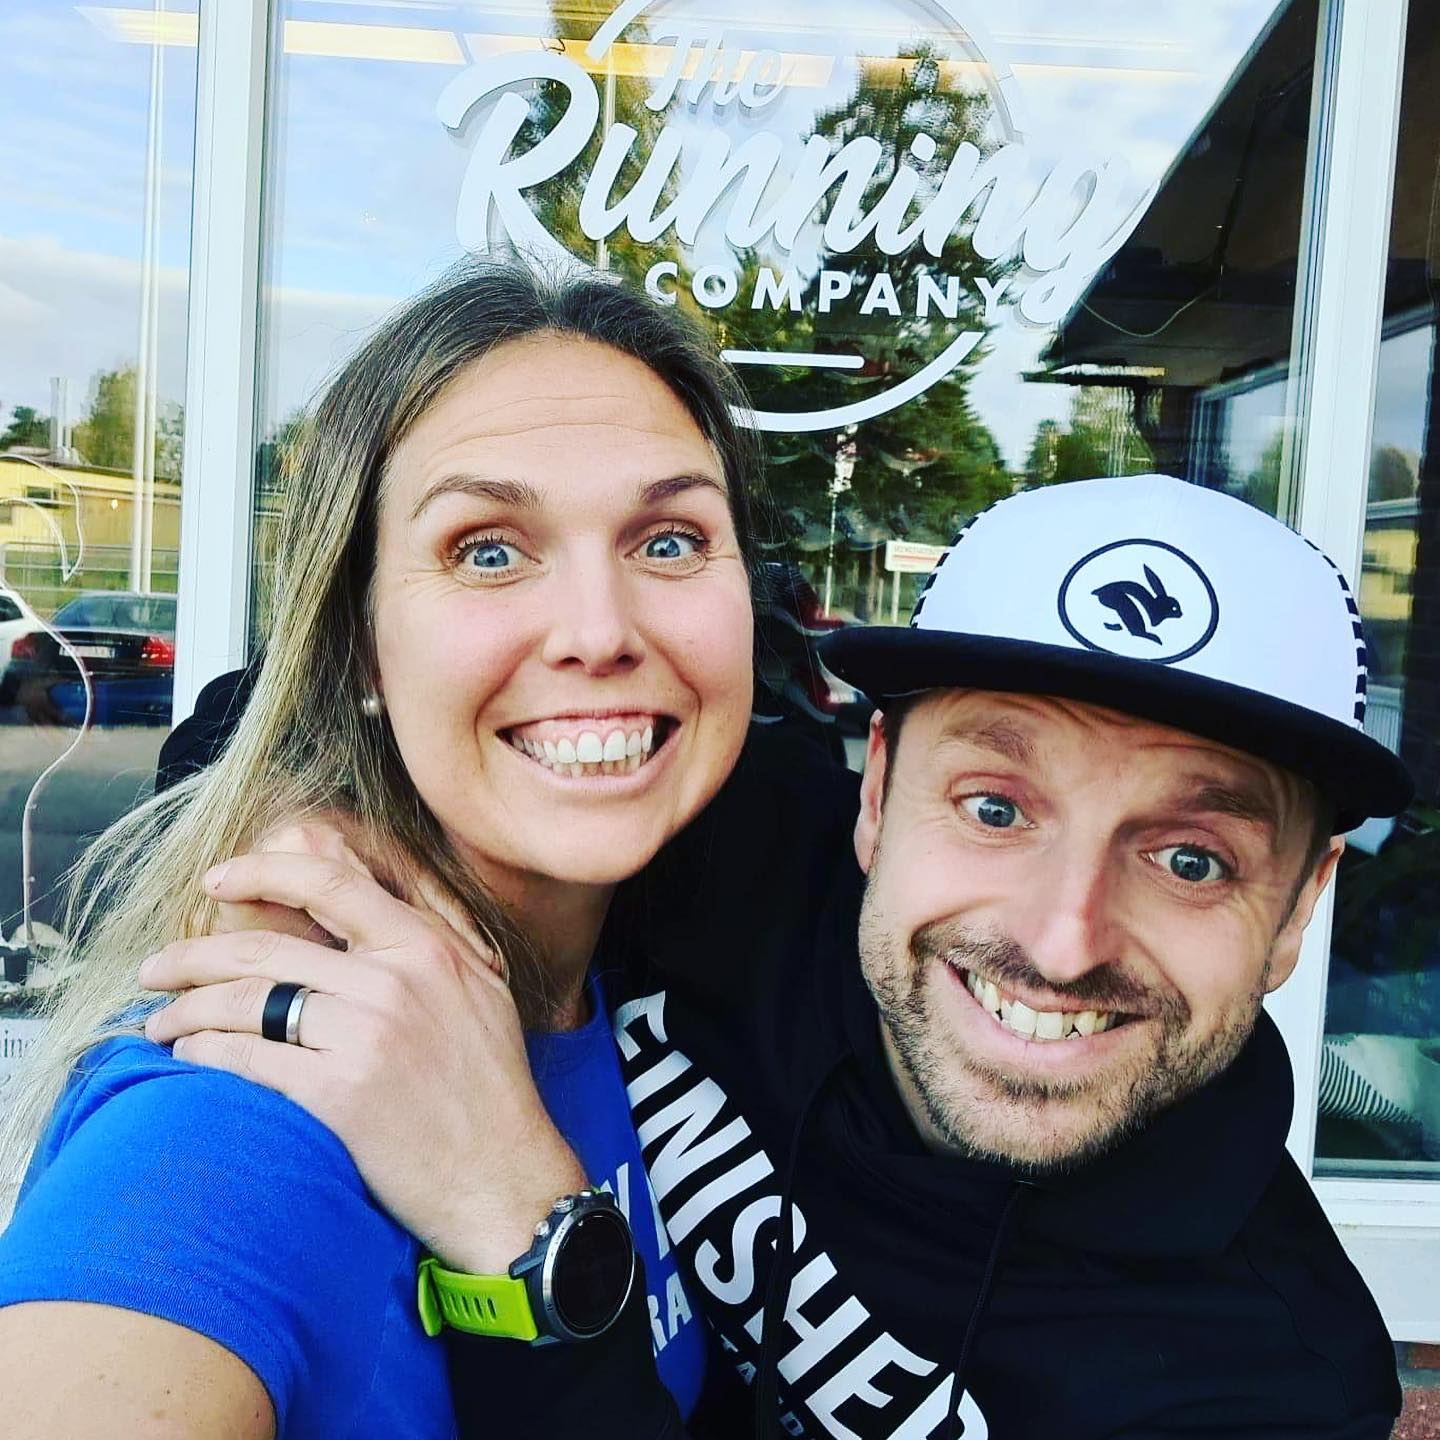 Våra passionerade ägare, Petra Marie Ekenstierna och Per Marcus Ekenstierna, driver The Running Company och delar sin kärlek till löpning med våra kunder.